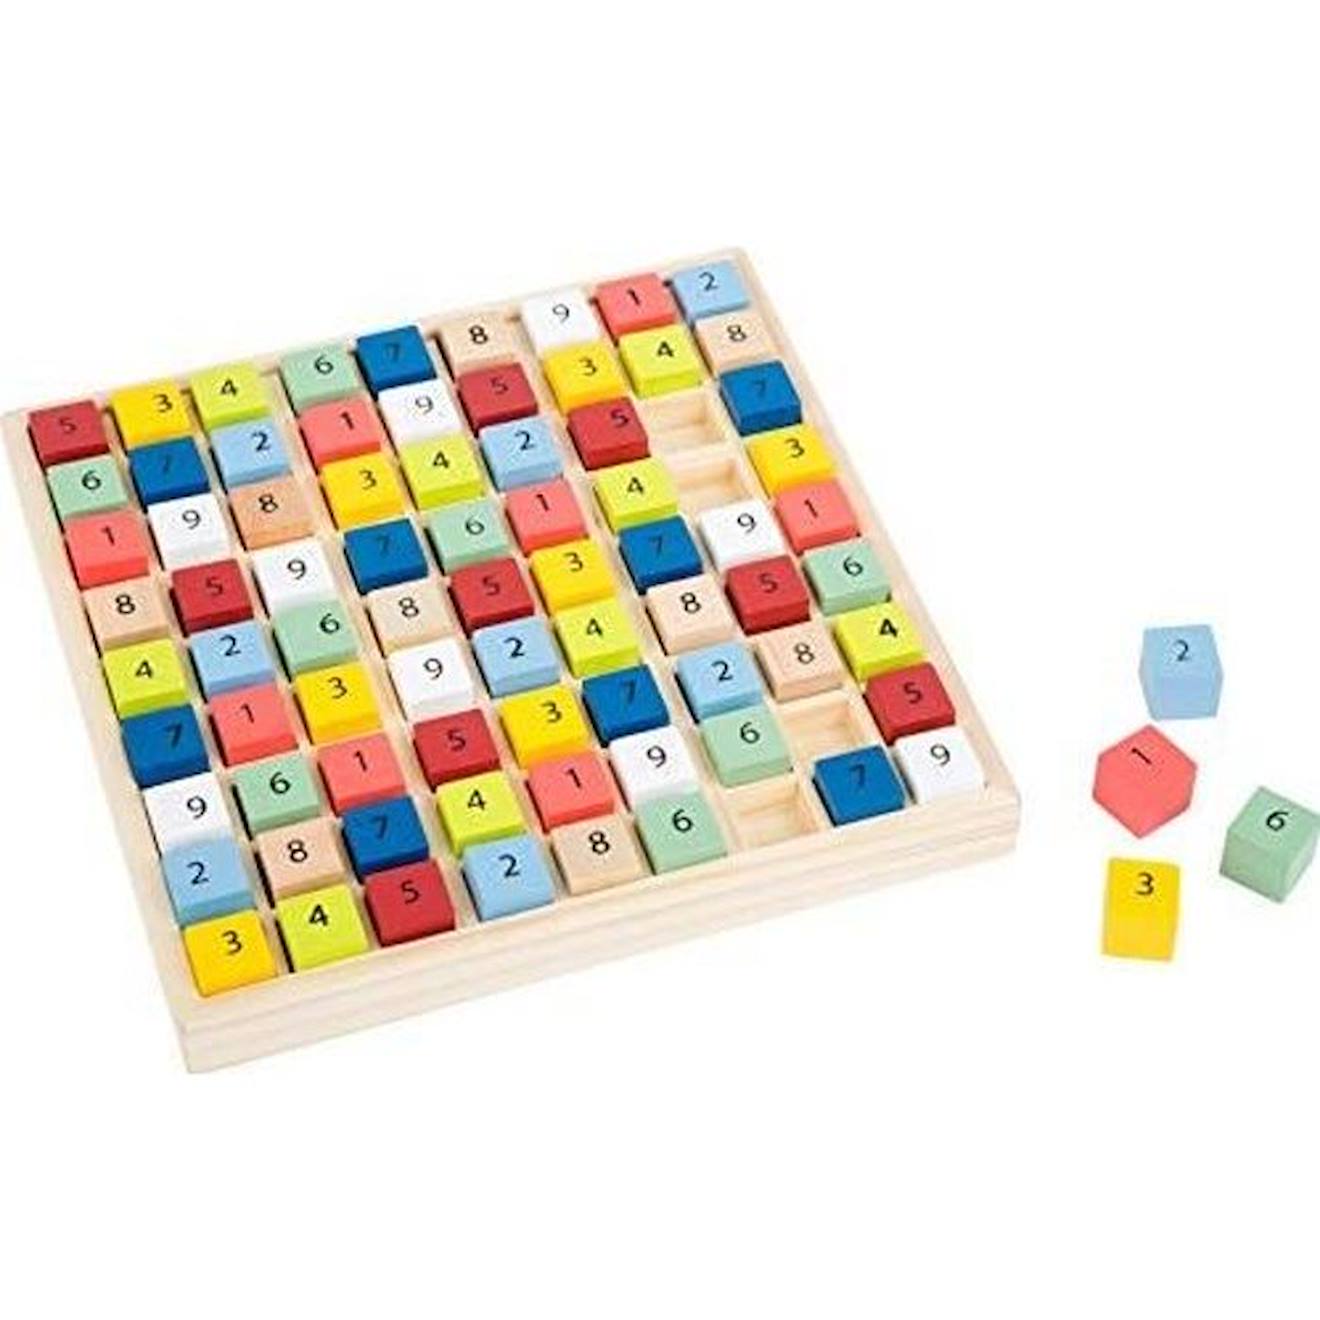 Small Foot 11164 Sudoku Coloré educate En Bois, Avec 81 Cubes Numérotés Dans Des Couleurs Vives, À P